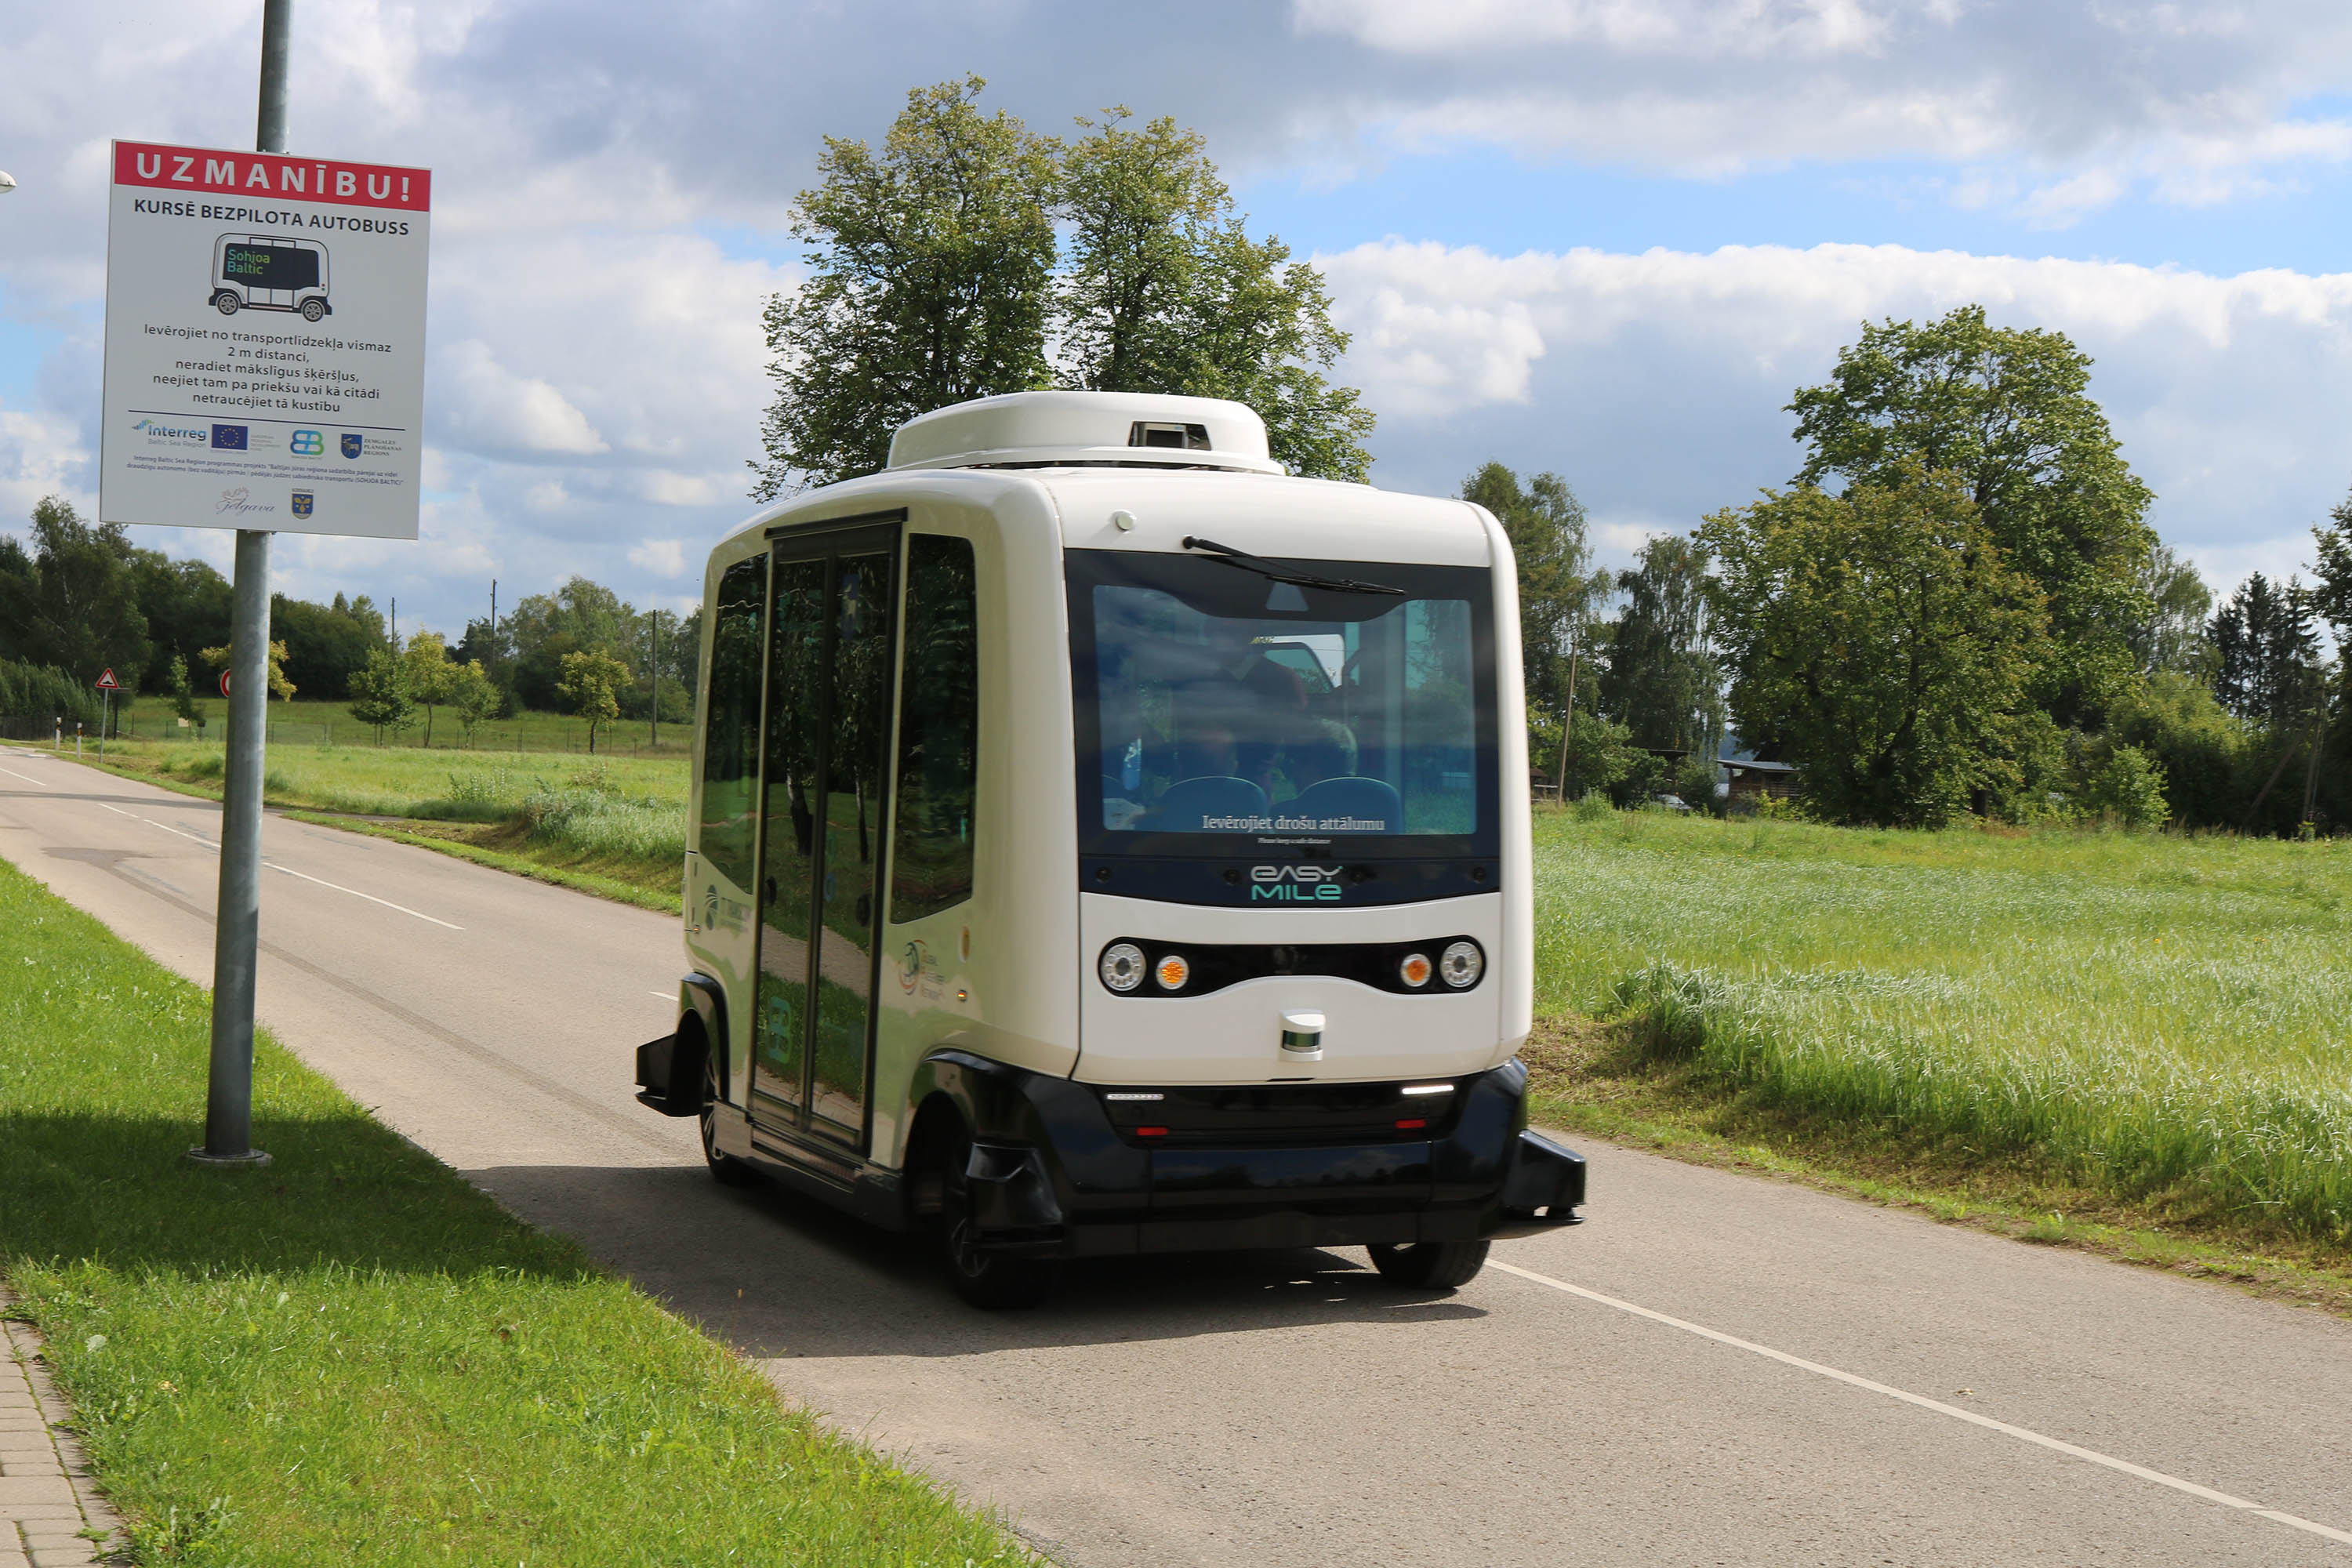 [NEWS] Zemgale: e-bus has carried 5,000 passengers 